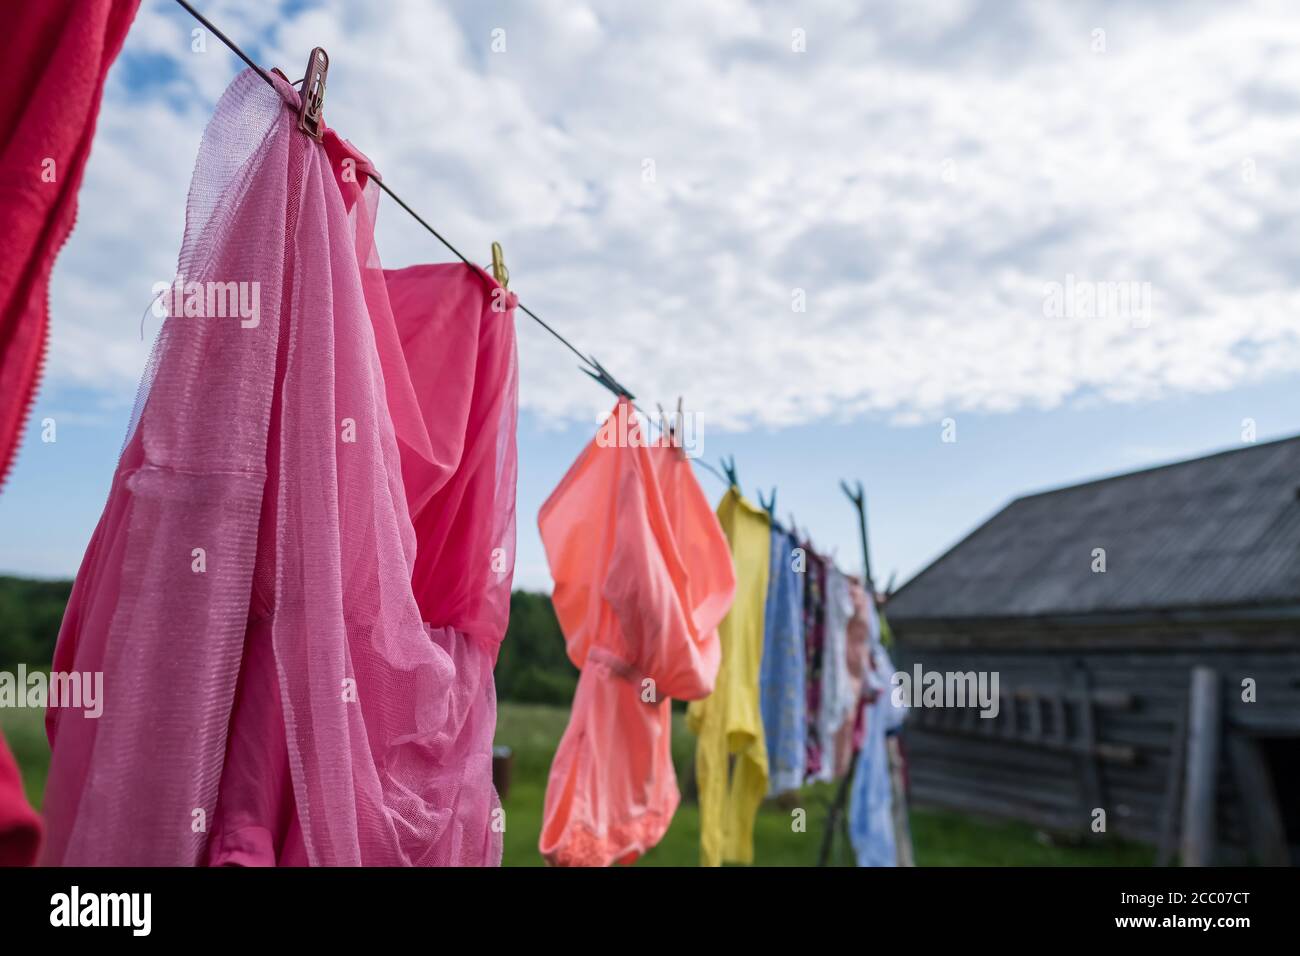 La ropa limpia y lavada se seca al aire libre, sobre una línea de